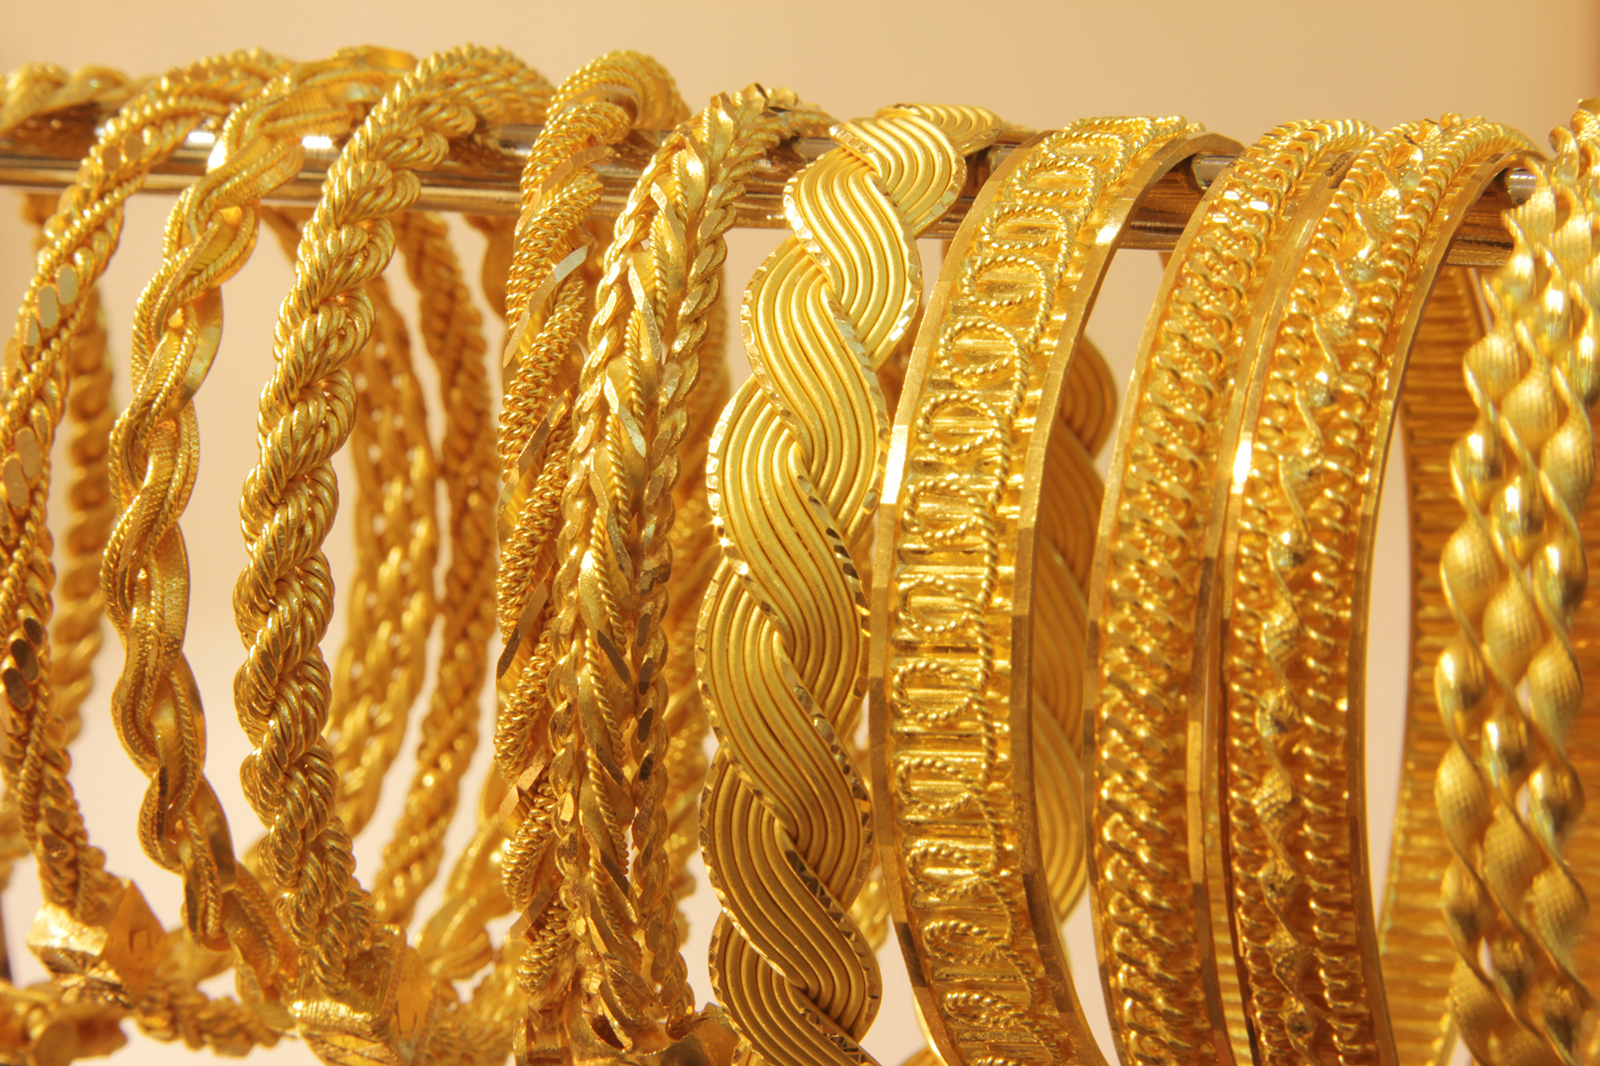 Now gold. Дубайское золото браслеты. Голд. Широкие золотые браслеты в персидском стиле. Редкие браслеты из золота.